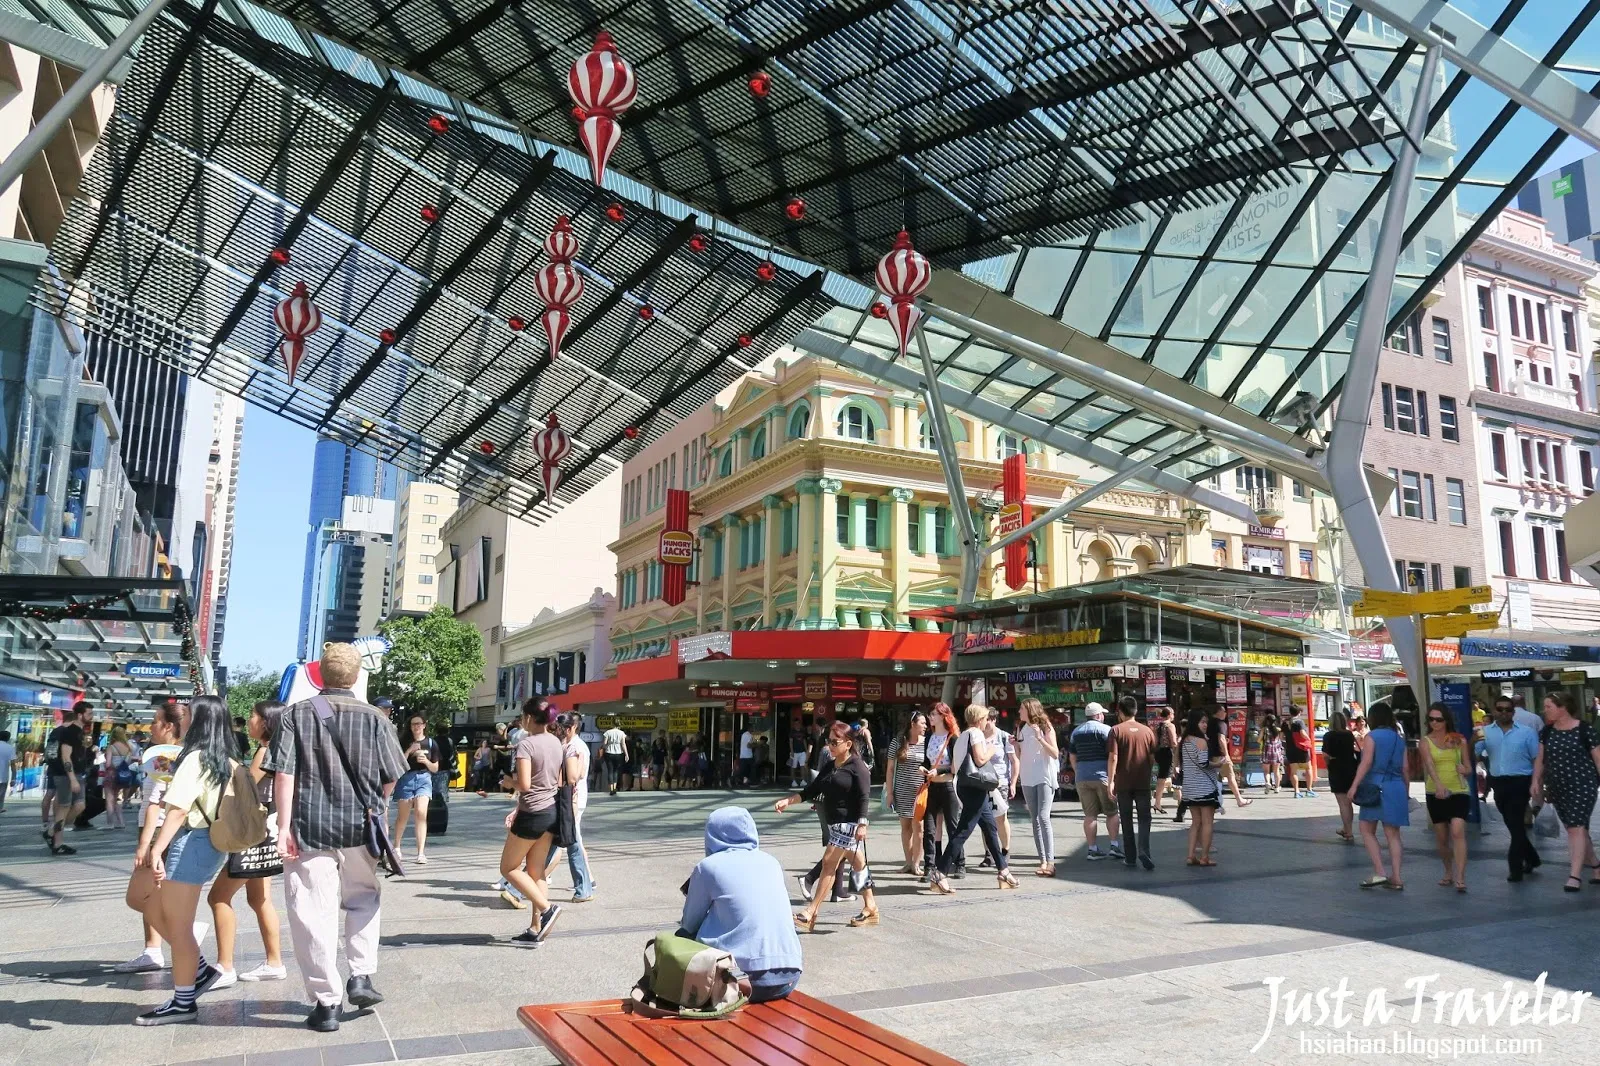 Brisbane-city-best-top-attraction-Queen-Street-Mall-shopping-centres-Myer-QueensPlaza-David-Jones-Wintergarden-guide-travel